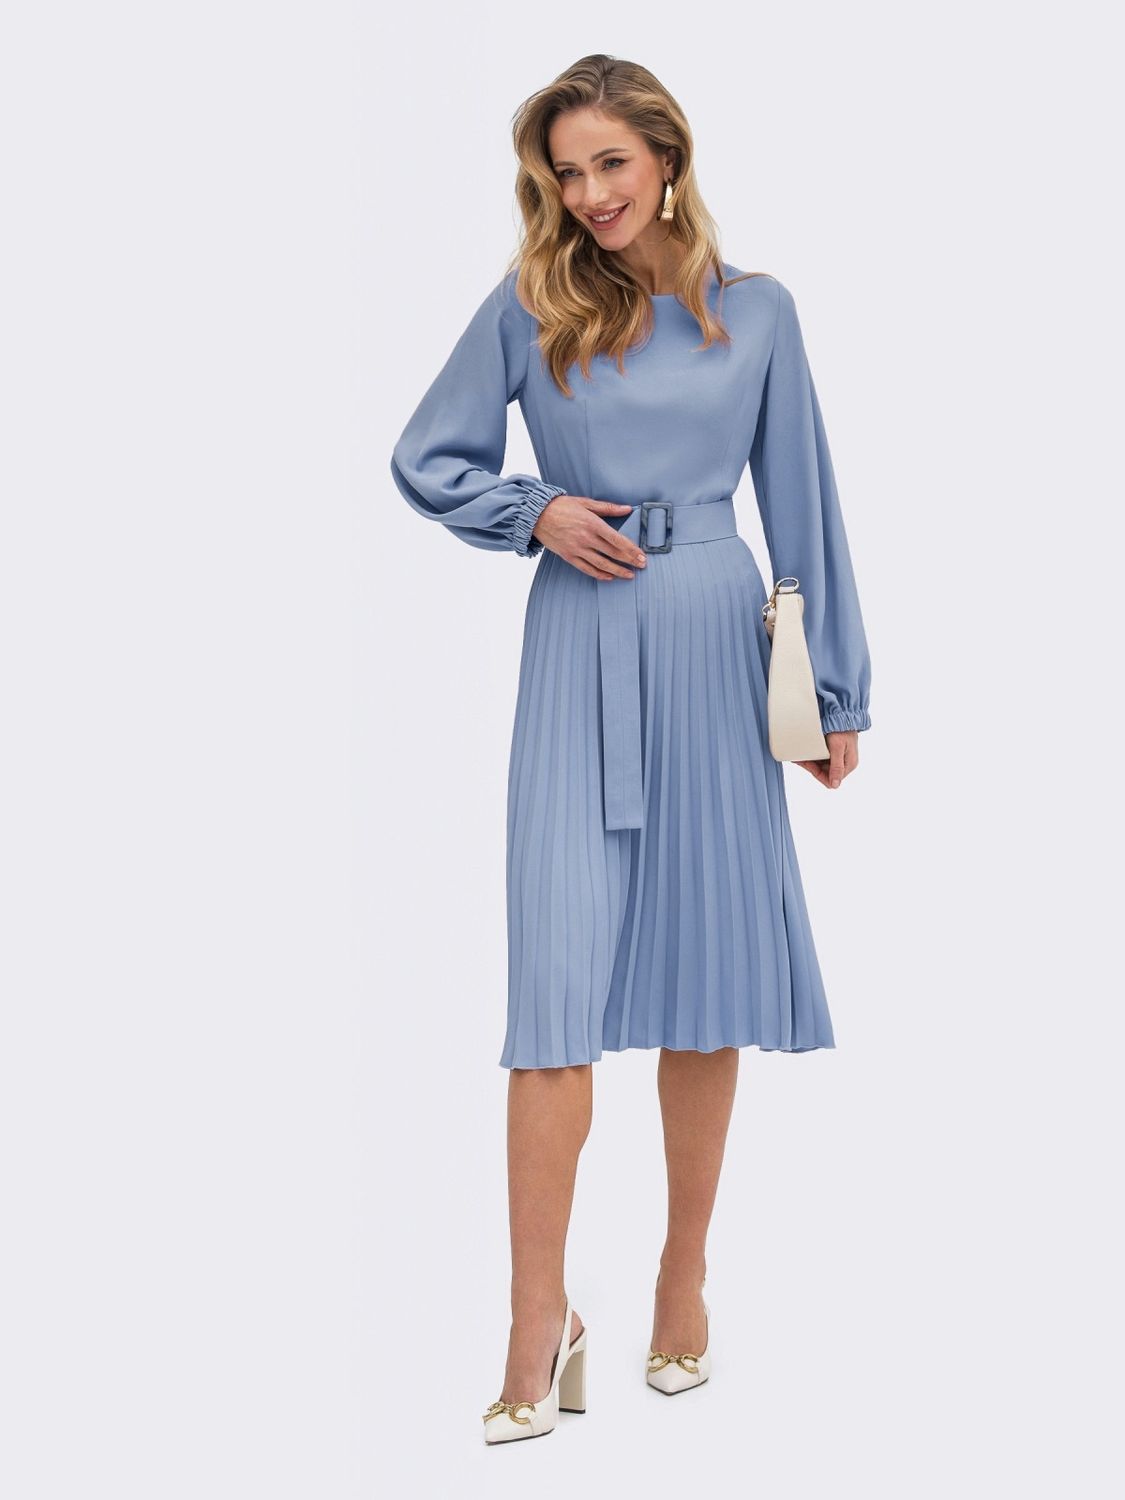 Платье-миди с юбкой-плиссе голубого цвета - фото